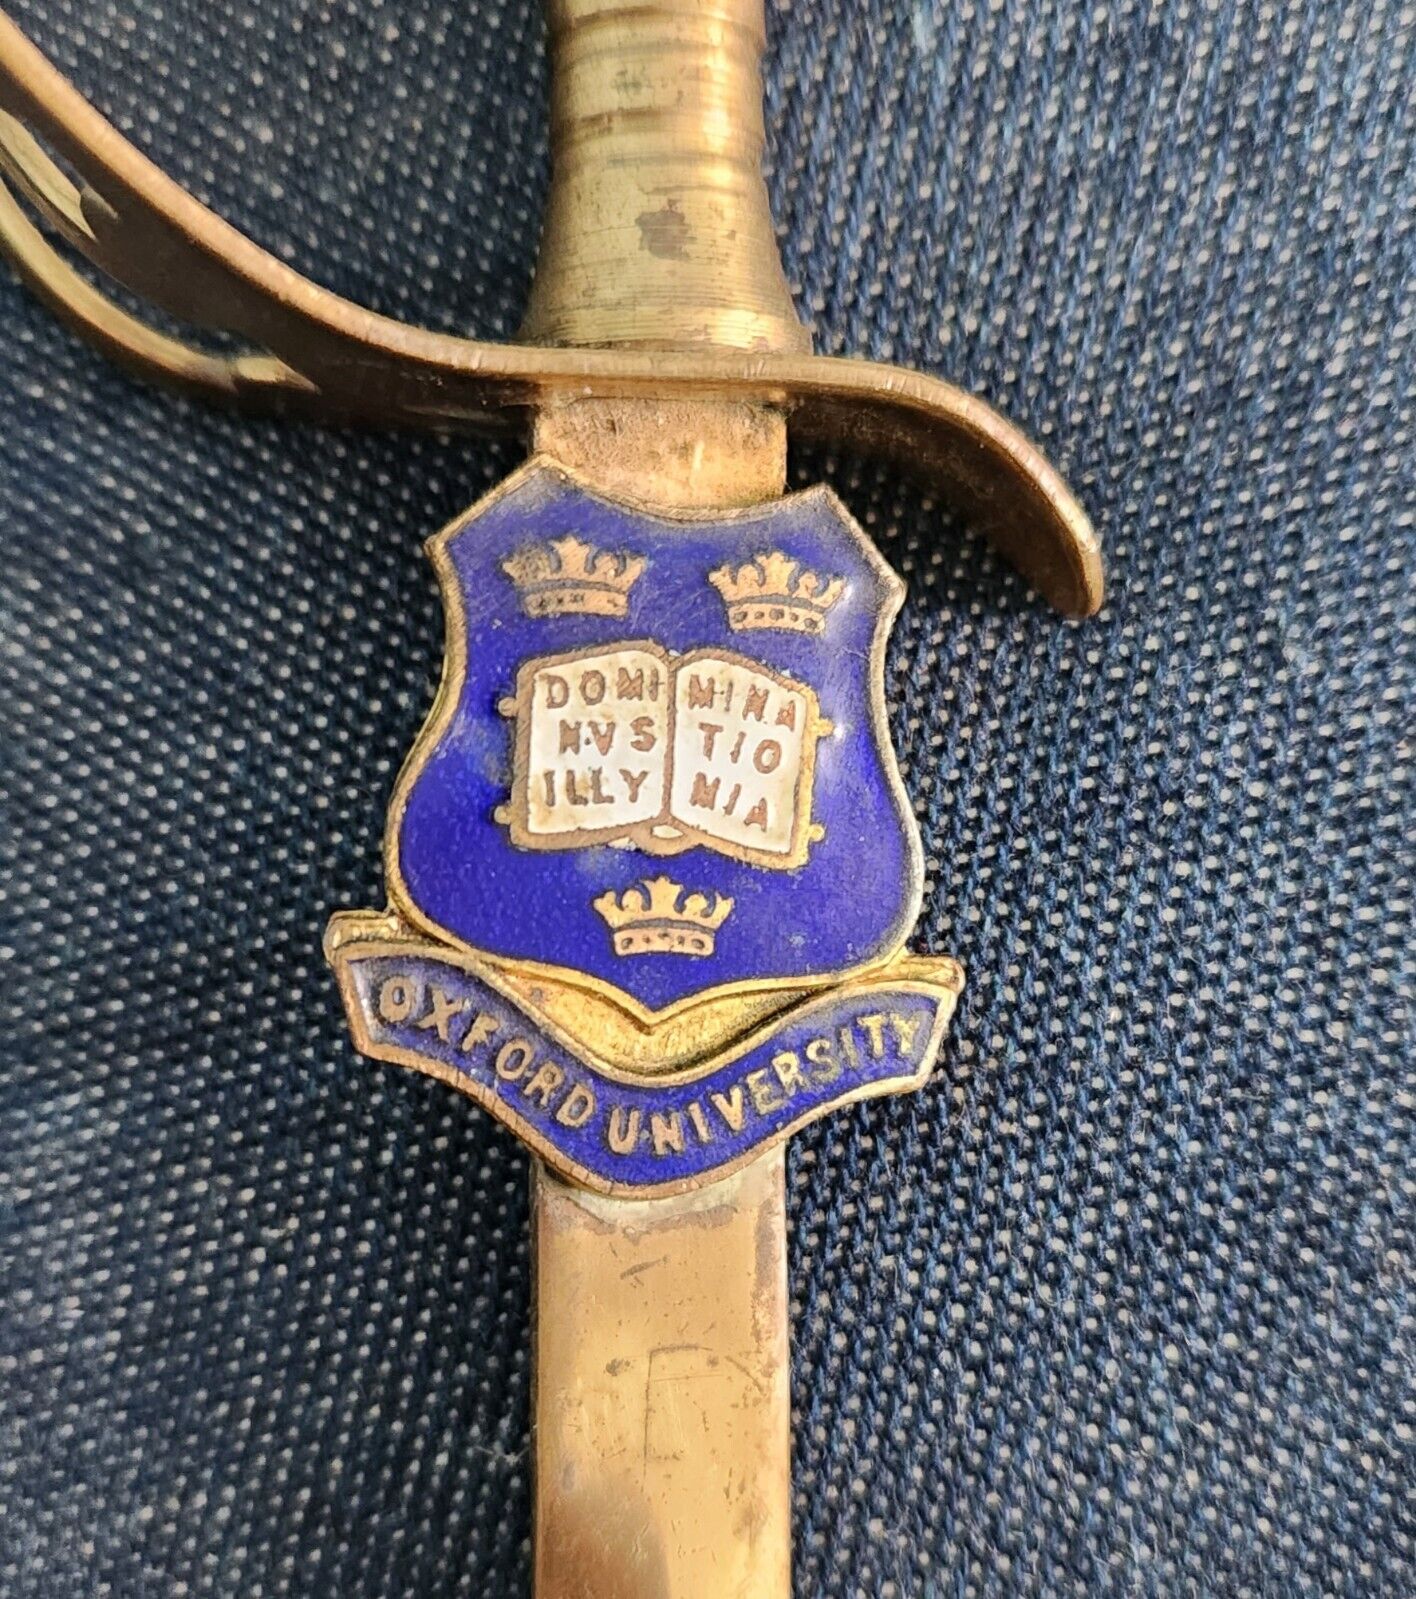 Antique Gilded Brass Oxford University Sword Letter Opener